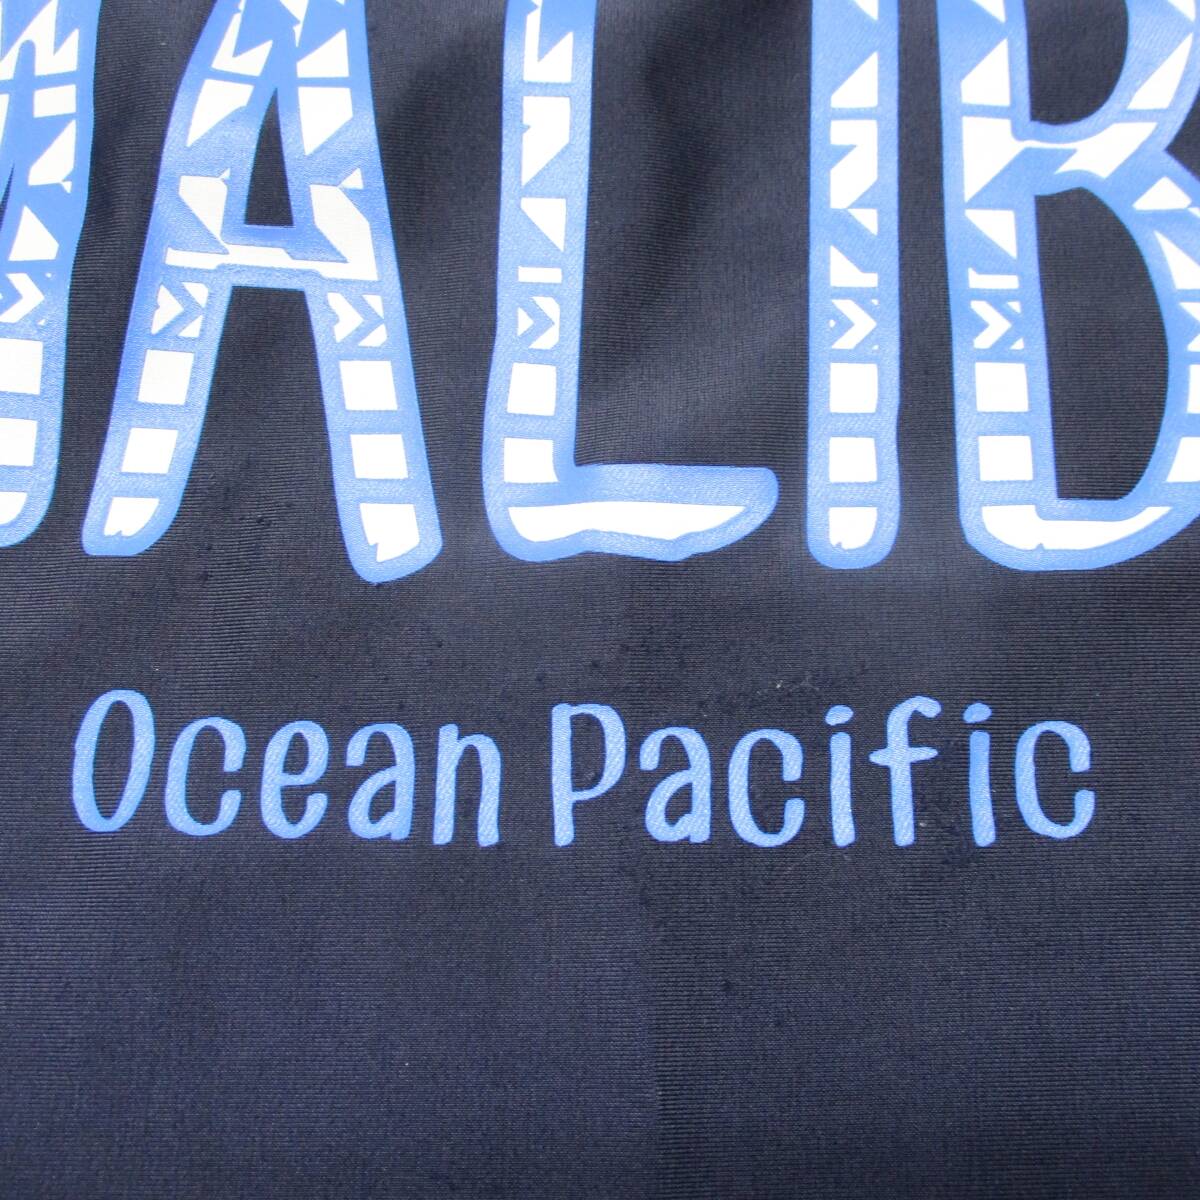 C0380* купальный костюм 3 позиций комплект Ocean Pacific темно-синий темно-синий бледно-голубой симпатичный рисунок узор ....150 размер женщина майка юбка женский море 